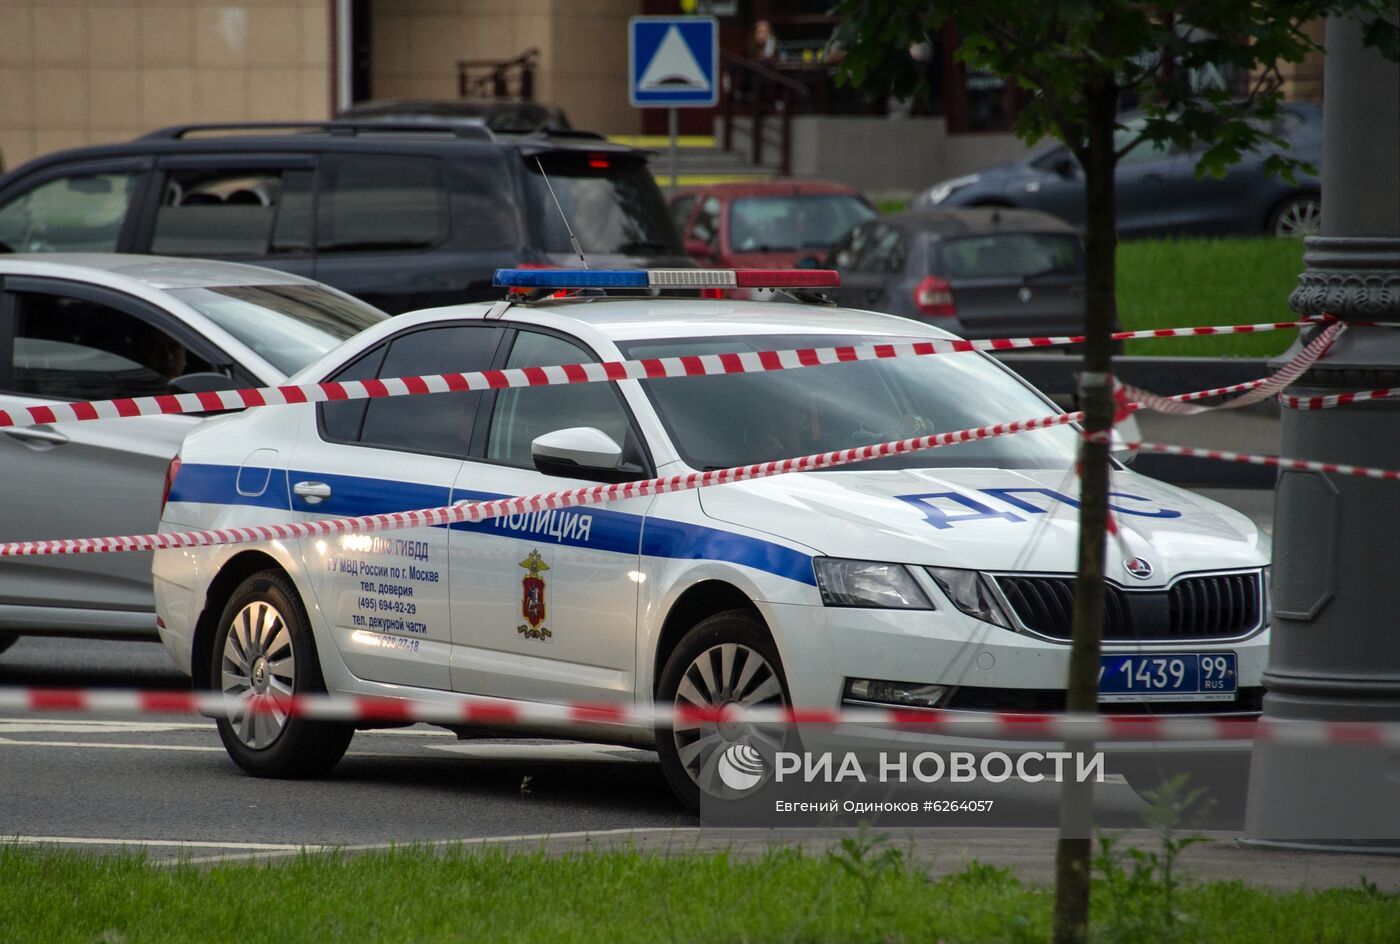 Двух полицейских ранили в ходе стрельбы на юго-западе Москвы